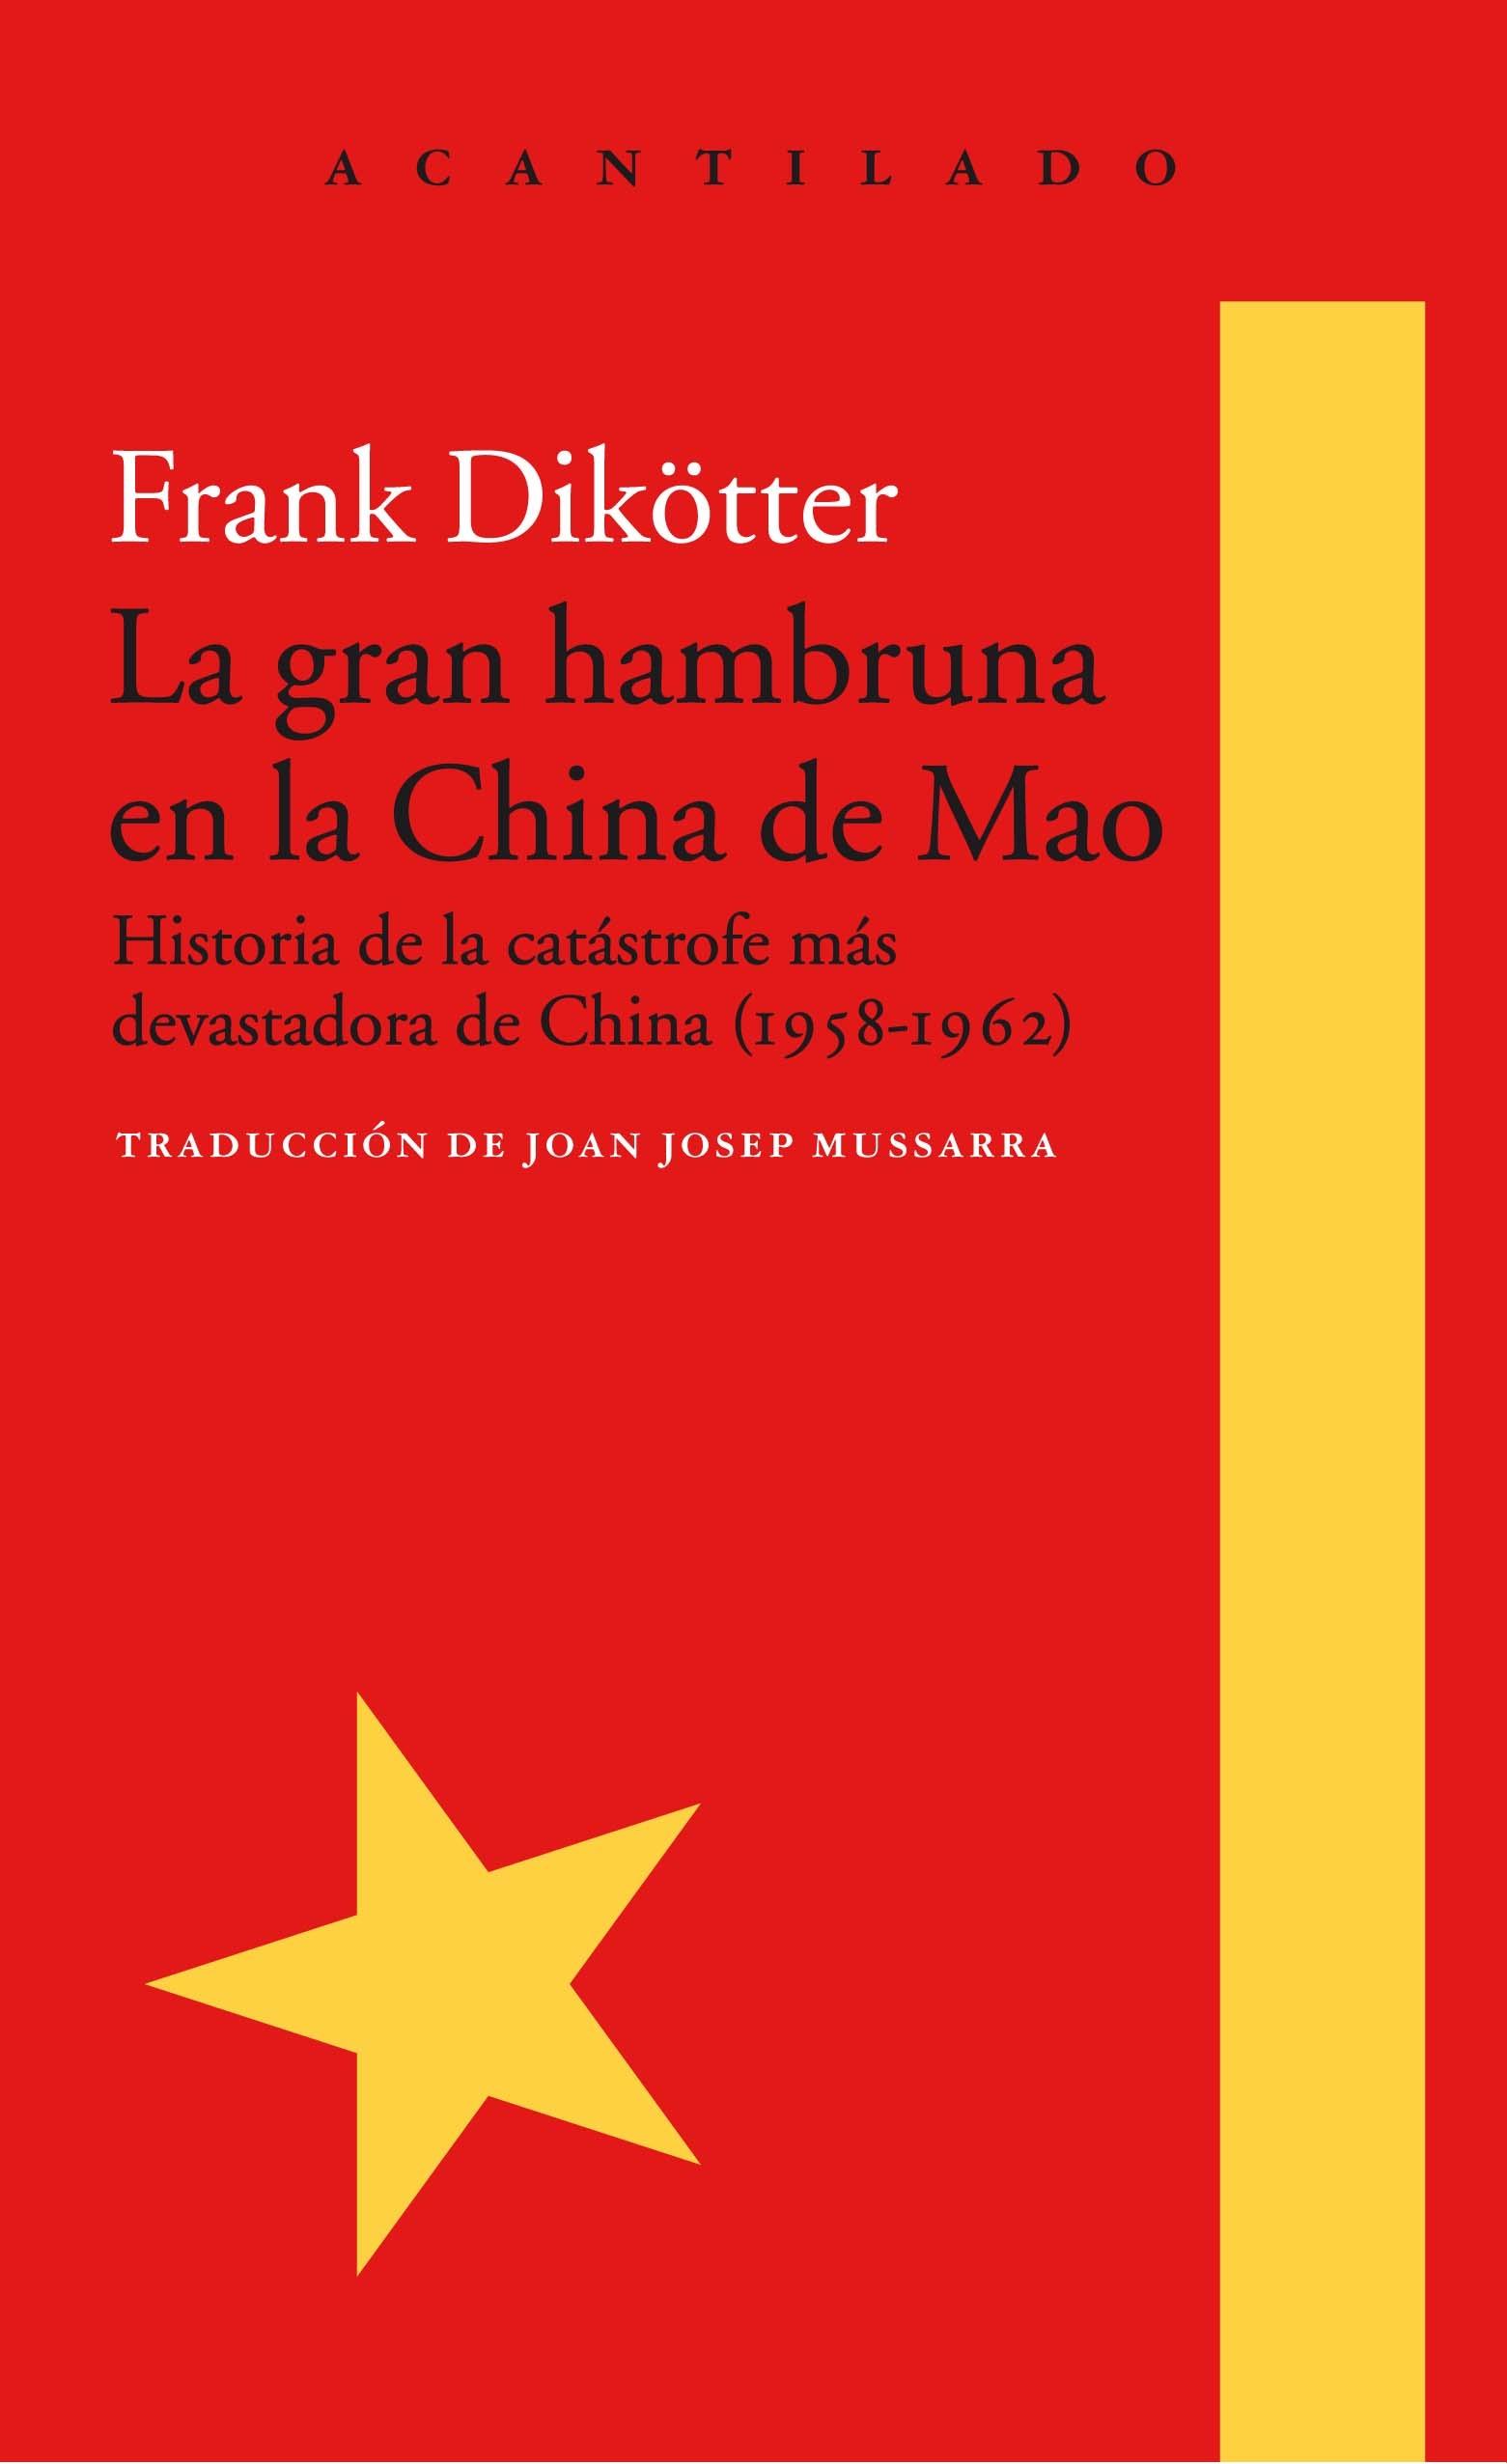 La gran hambruna en la China de Mao "Historia de la catástrofre más devastadora de China (1958-1962)". 